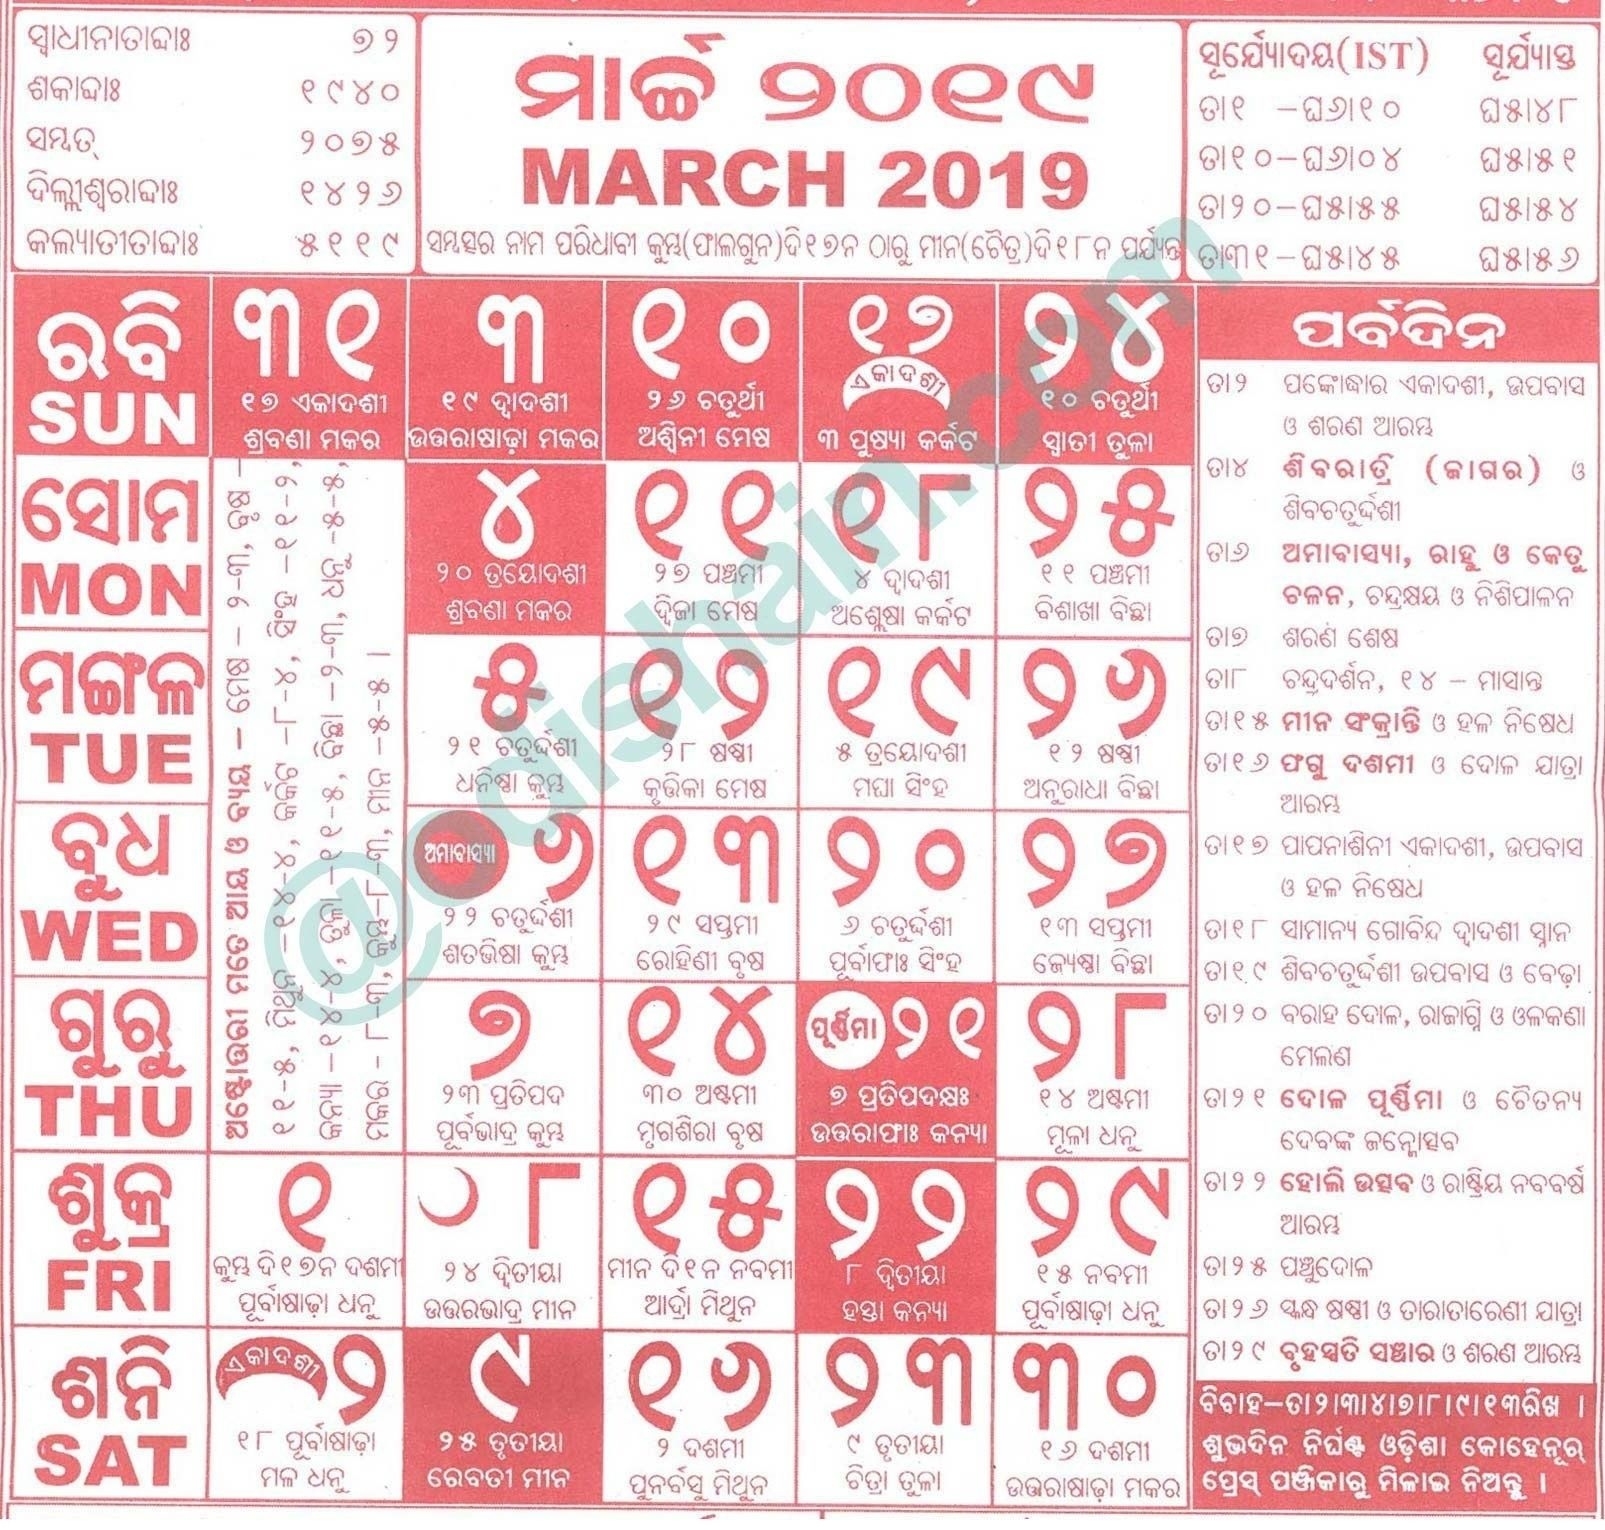 20+ Calendar 2021 Odia - Free Download Printable Calendar Templates ️ Odia June 2021 Calendar